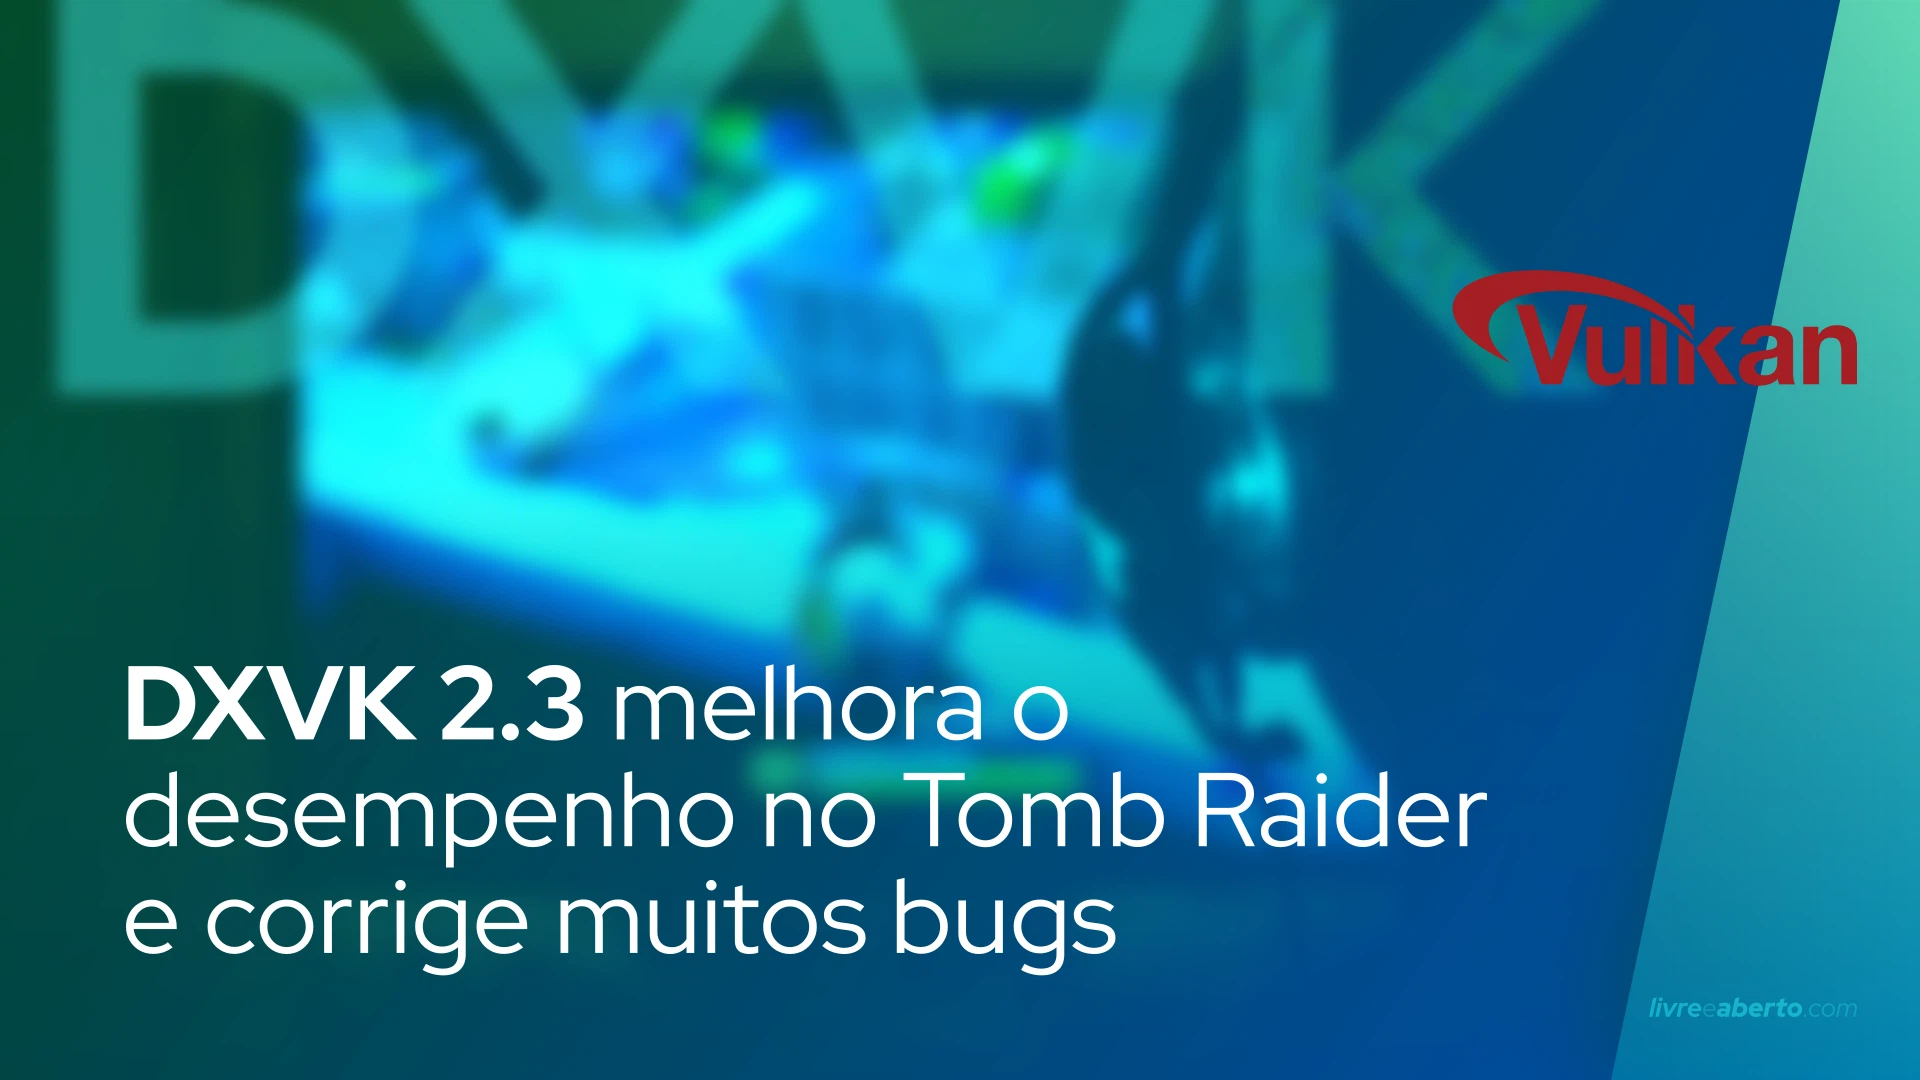 DXVK 2.3 melhora o desempenho no aniversário do Tomb Raider e corrige muitos bugs